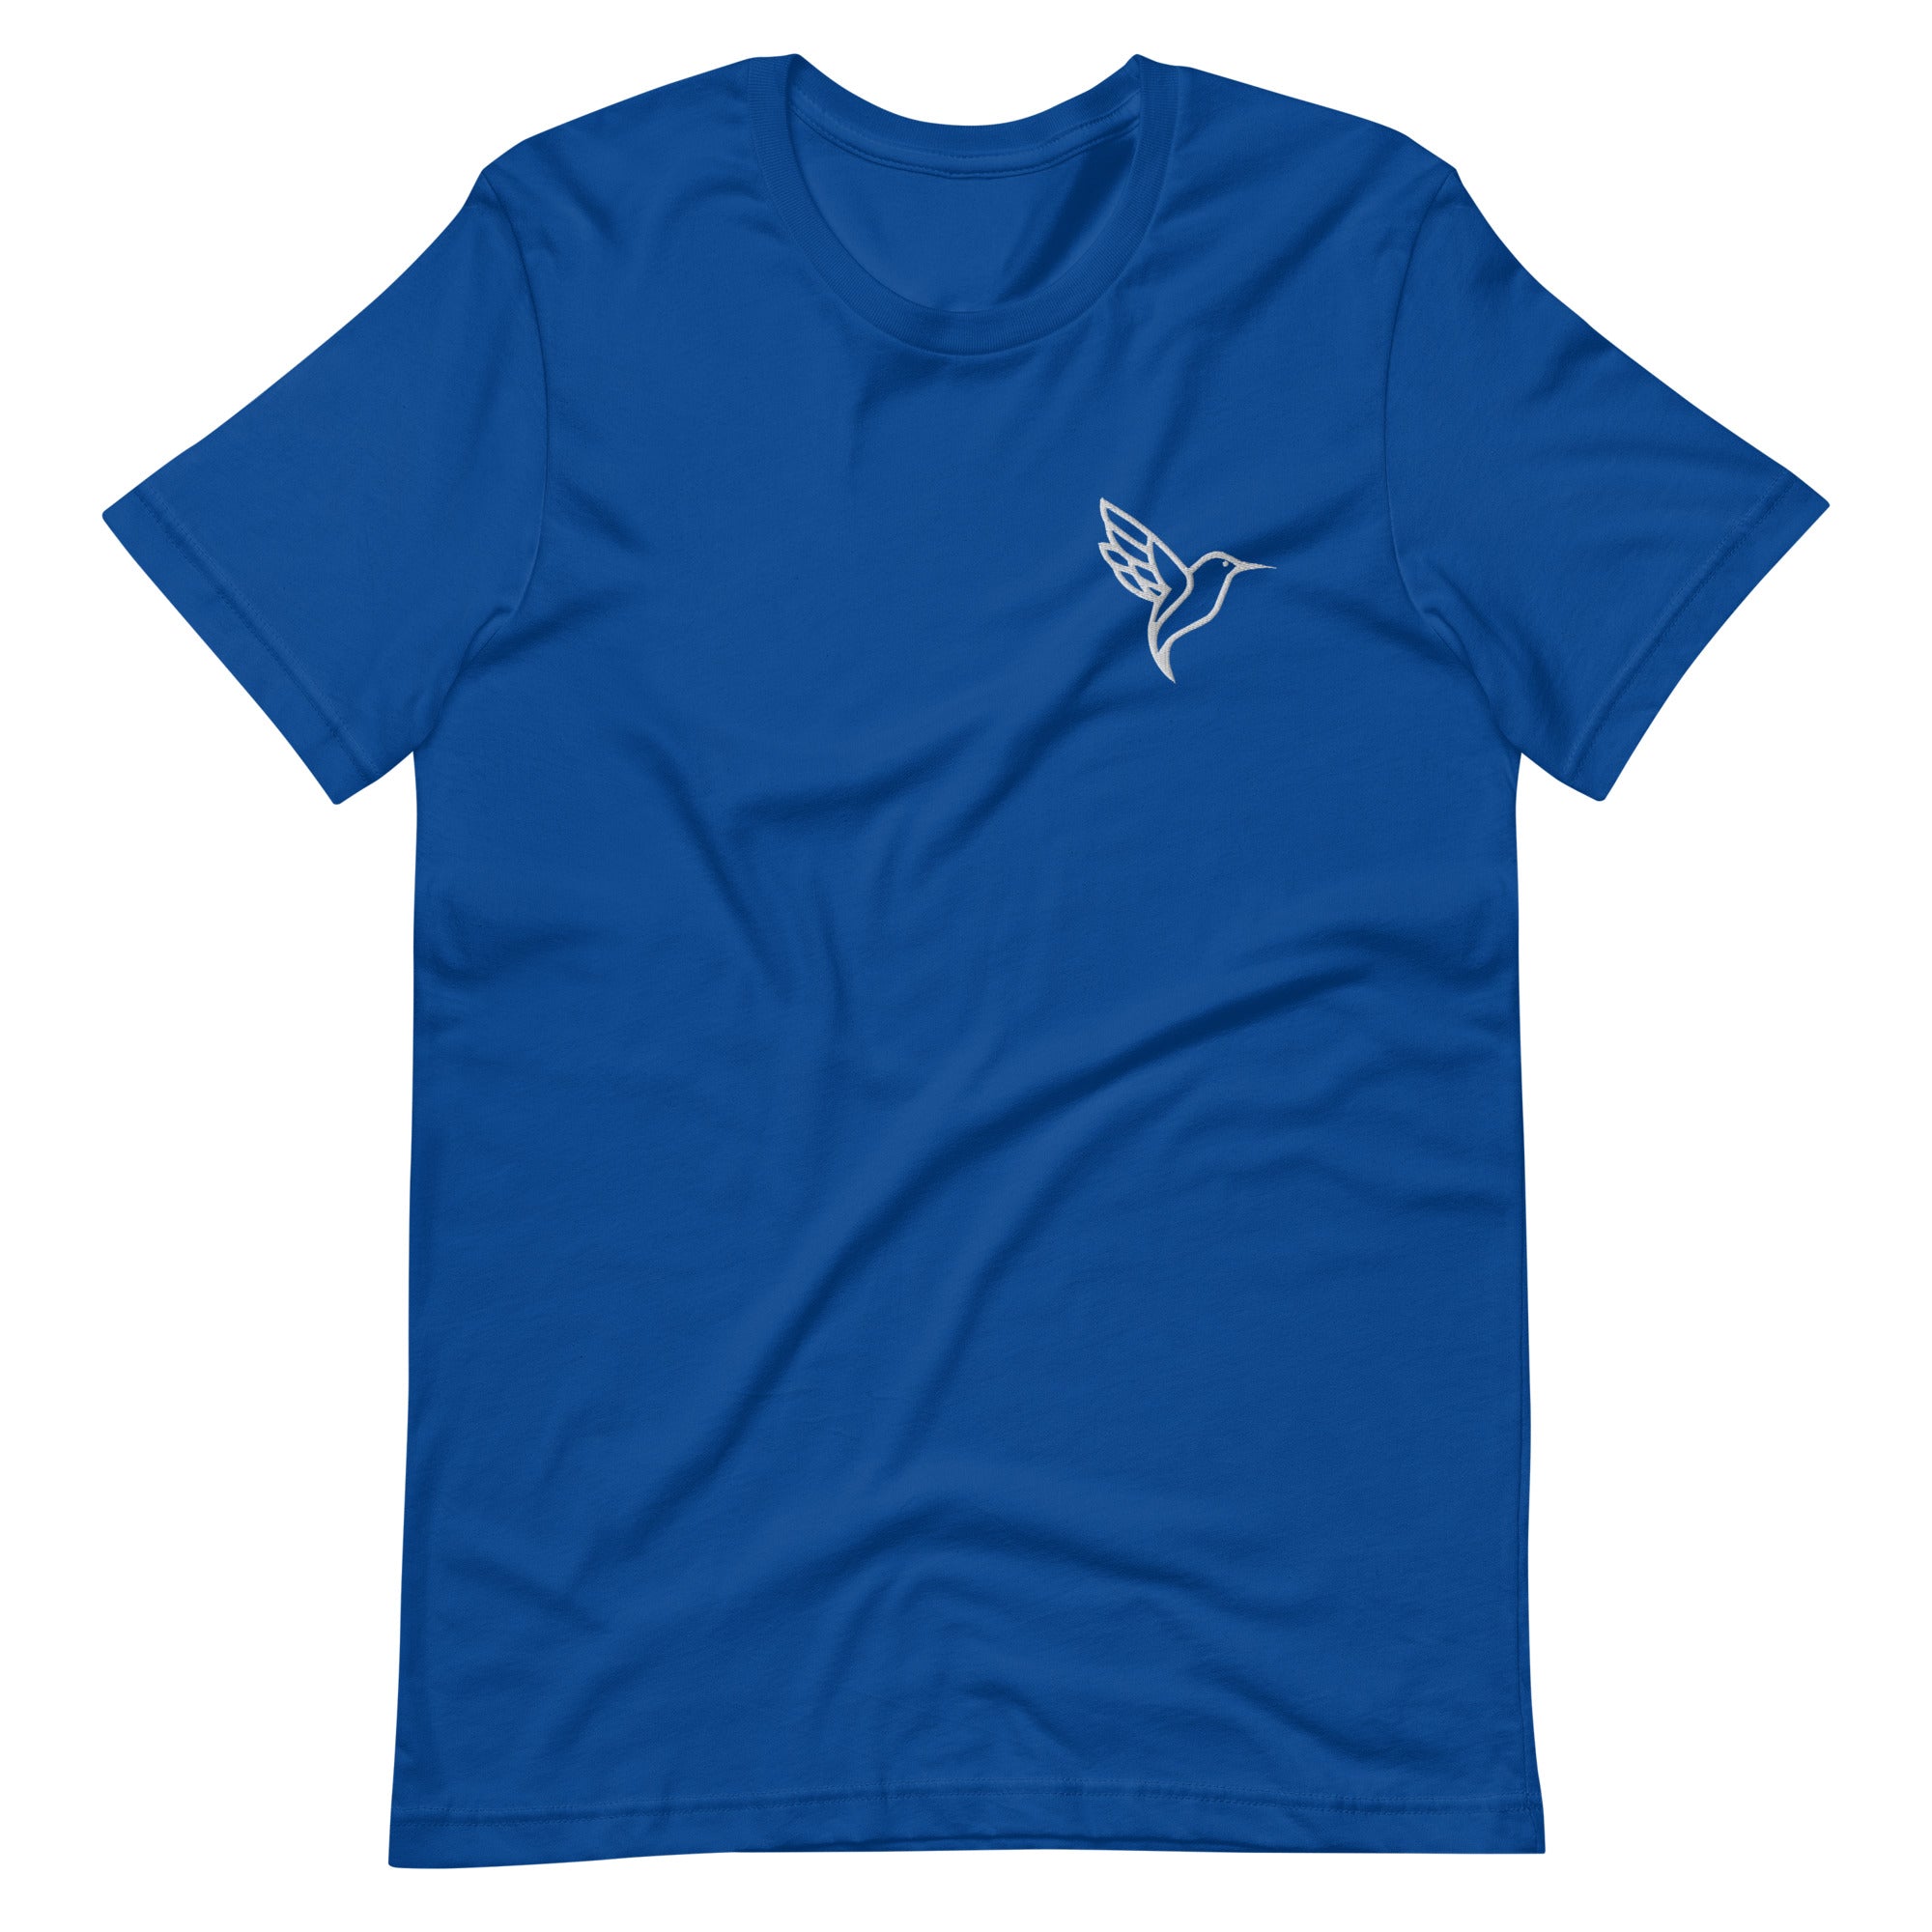 unisex-staple-t-shirt-true-royal-front-6396851100153.jpg